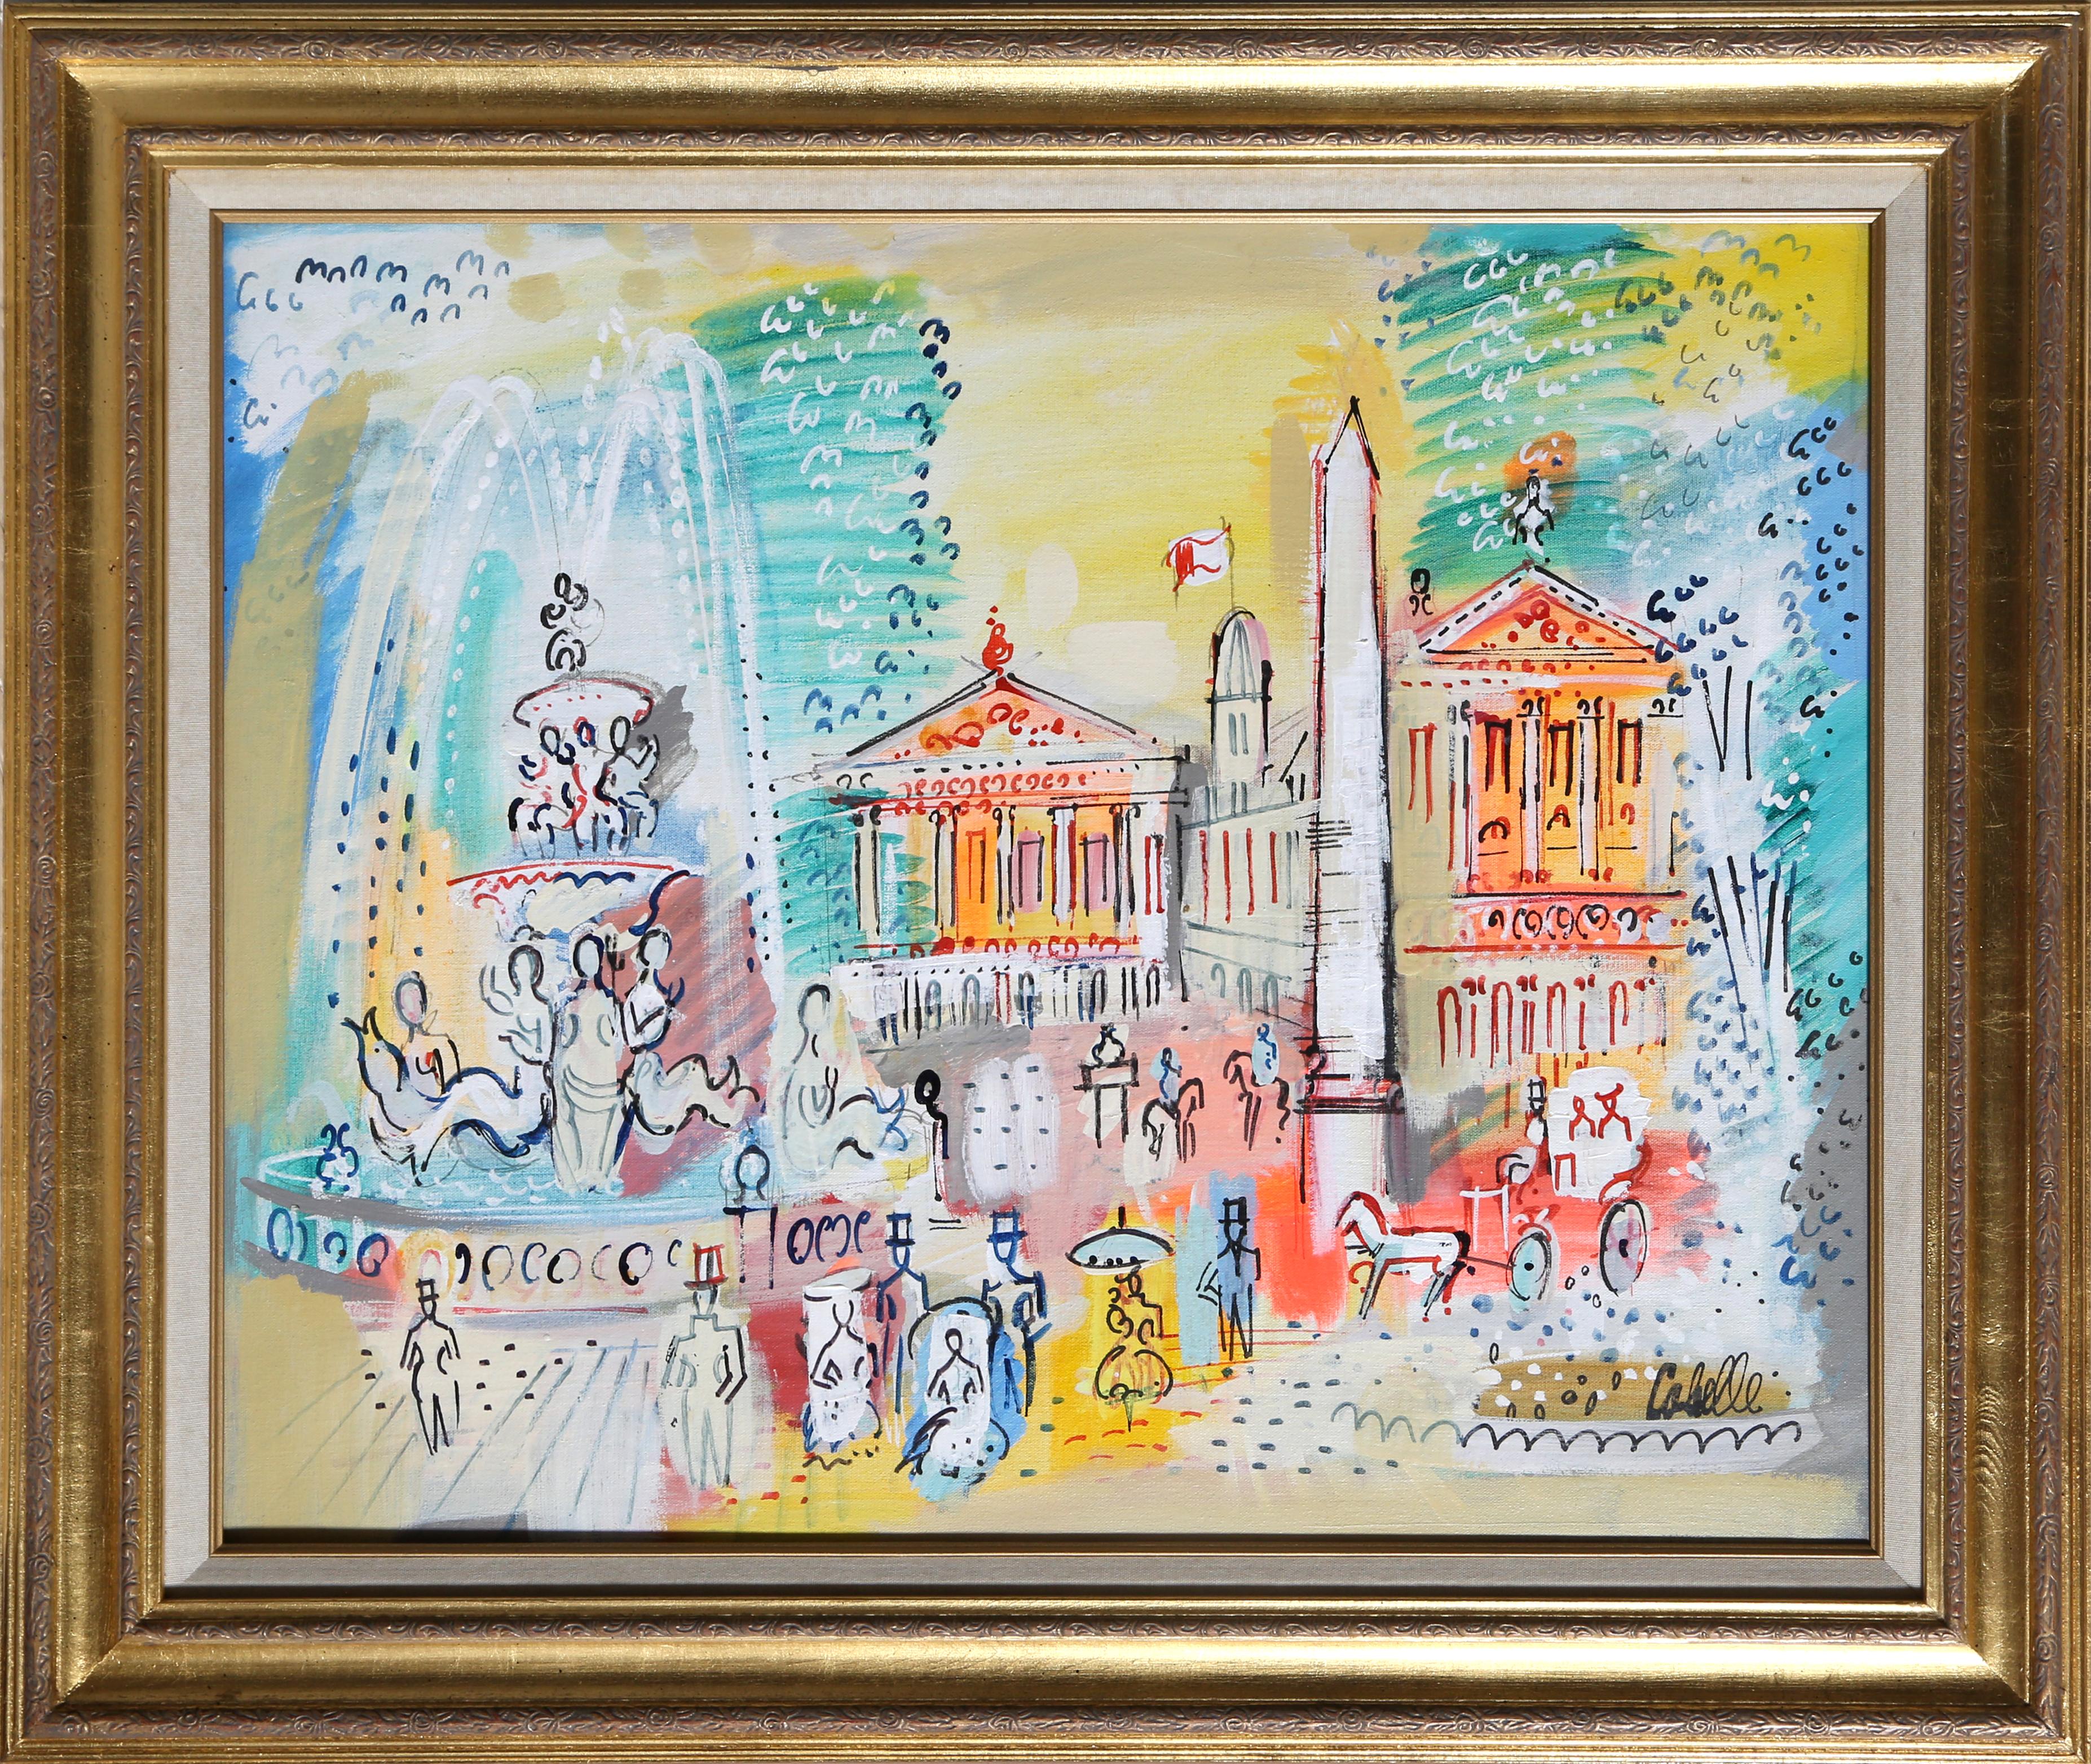 Artiste :  Charles Cobelle, Français (1902 - 1994)
Titre :  Paris, France
Année :  circa 1966
Moyen :  Acrylique sur toile, signée à gauche.
Taille :  20 x 24 in. (50.8 x 60.96 cm)
Taille du cadre :  31 x 37 pouces

